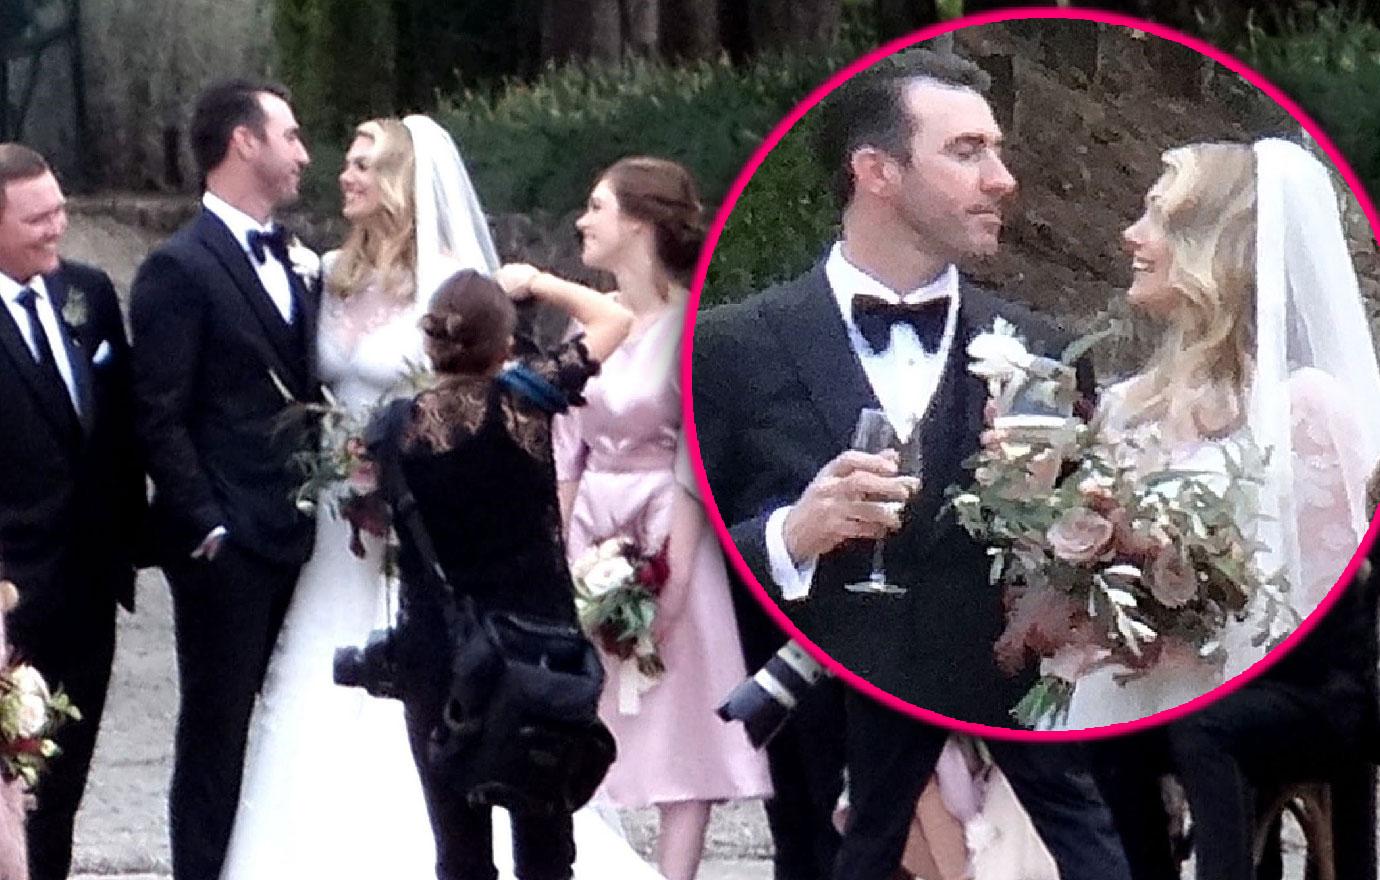 Kate Upton marries Justin Verlander in intimate Italian wedding